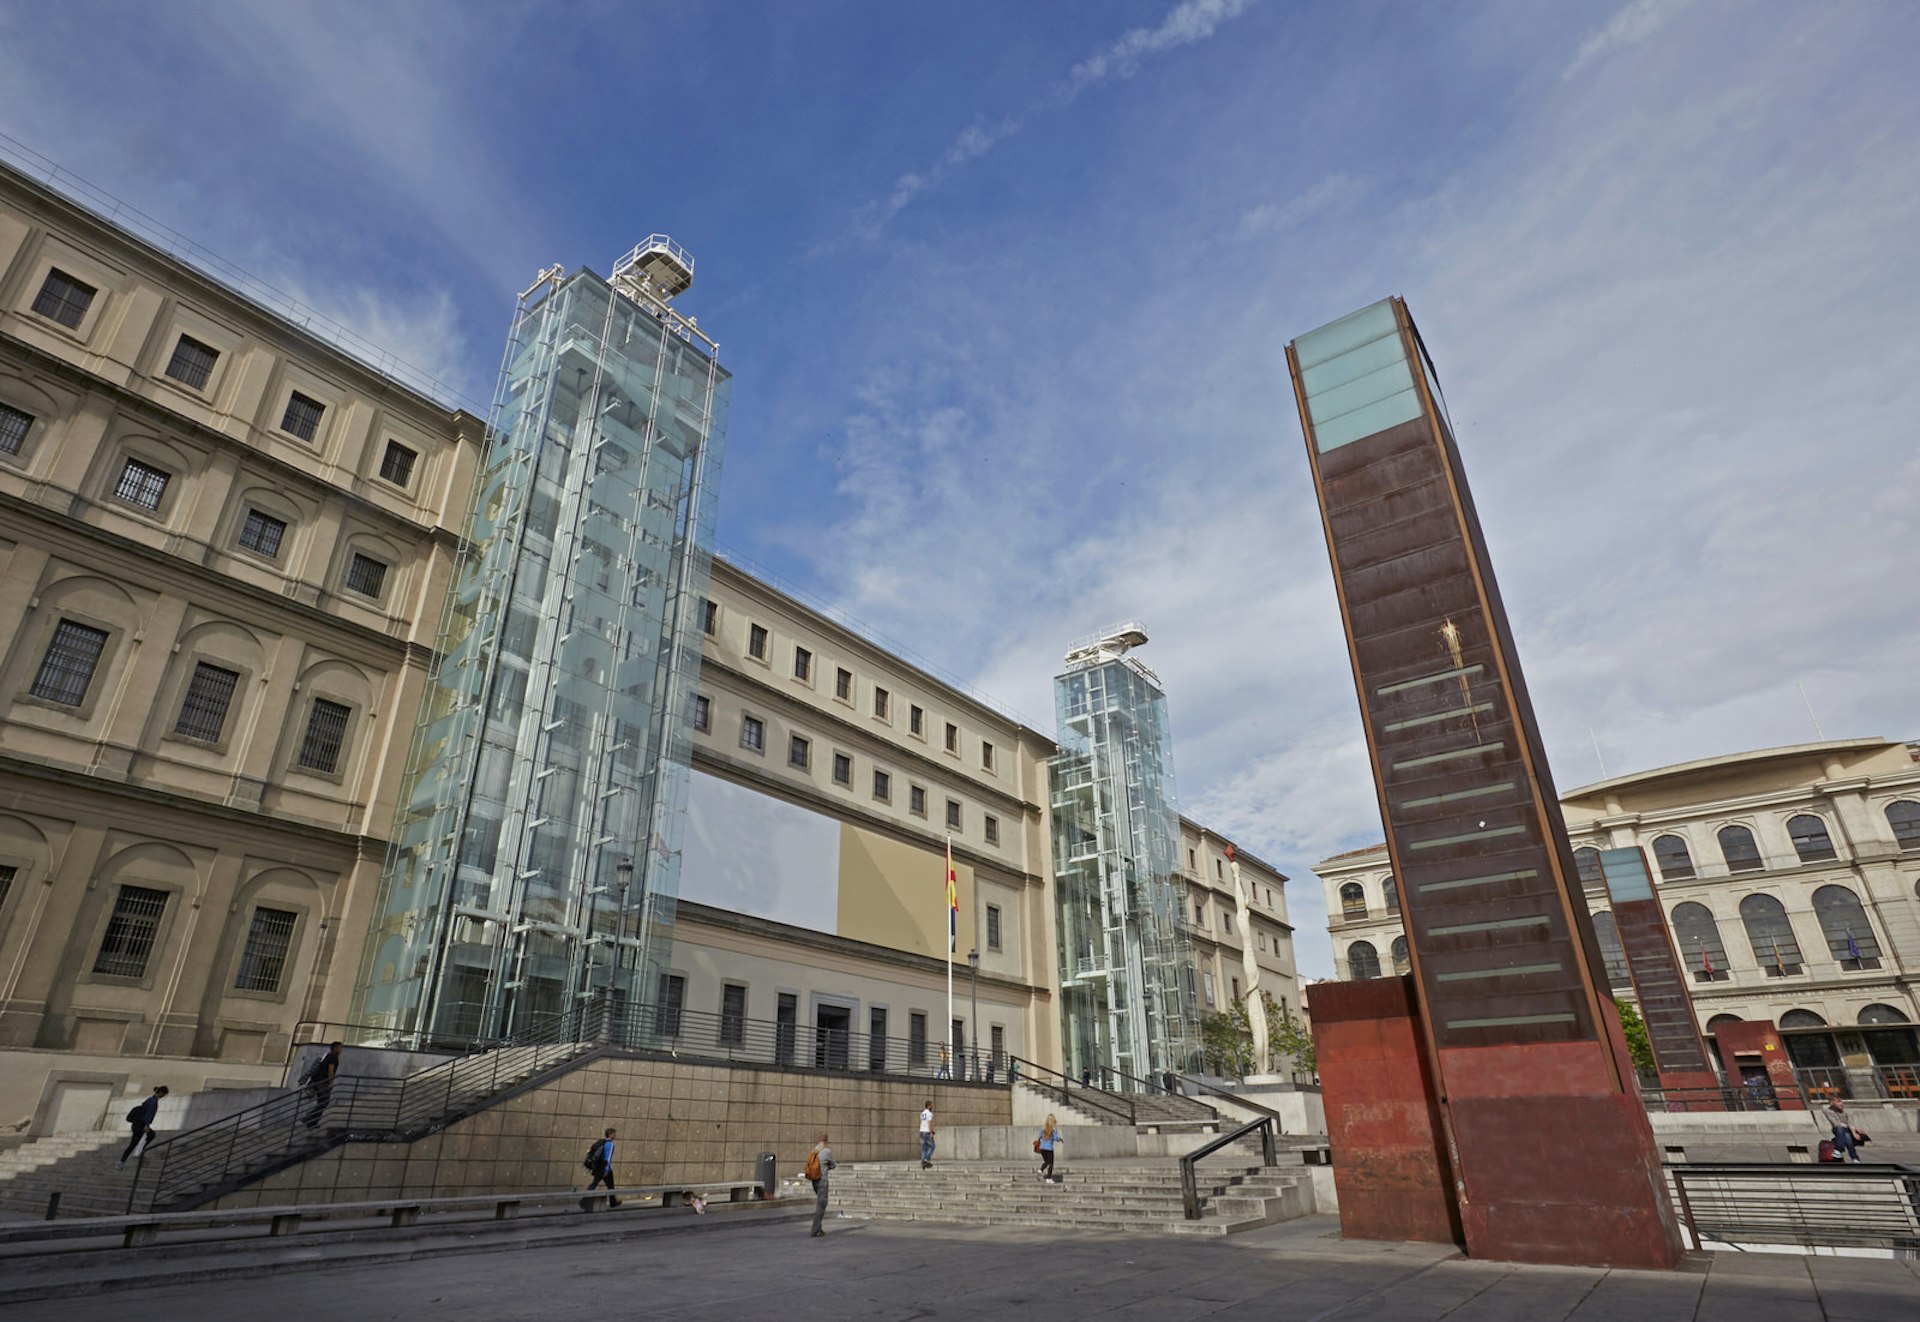 The facade of the Musei Nacional de Arts Reina Sofia © Allan Baxter / Getty Images